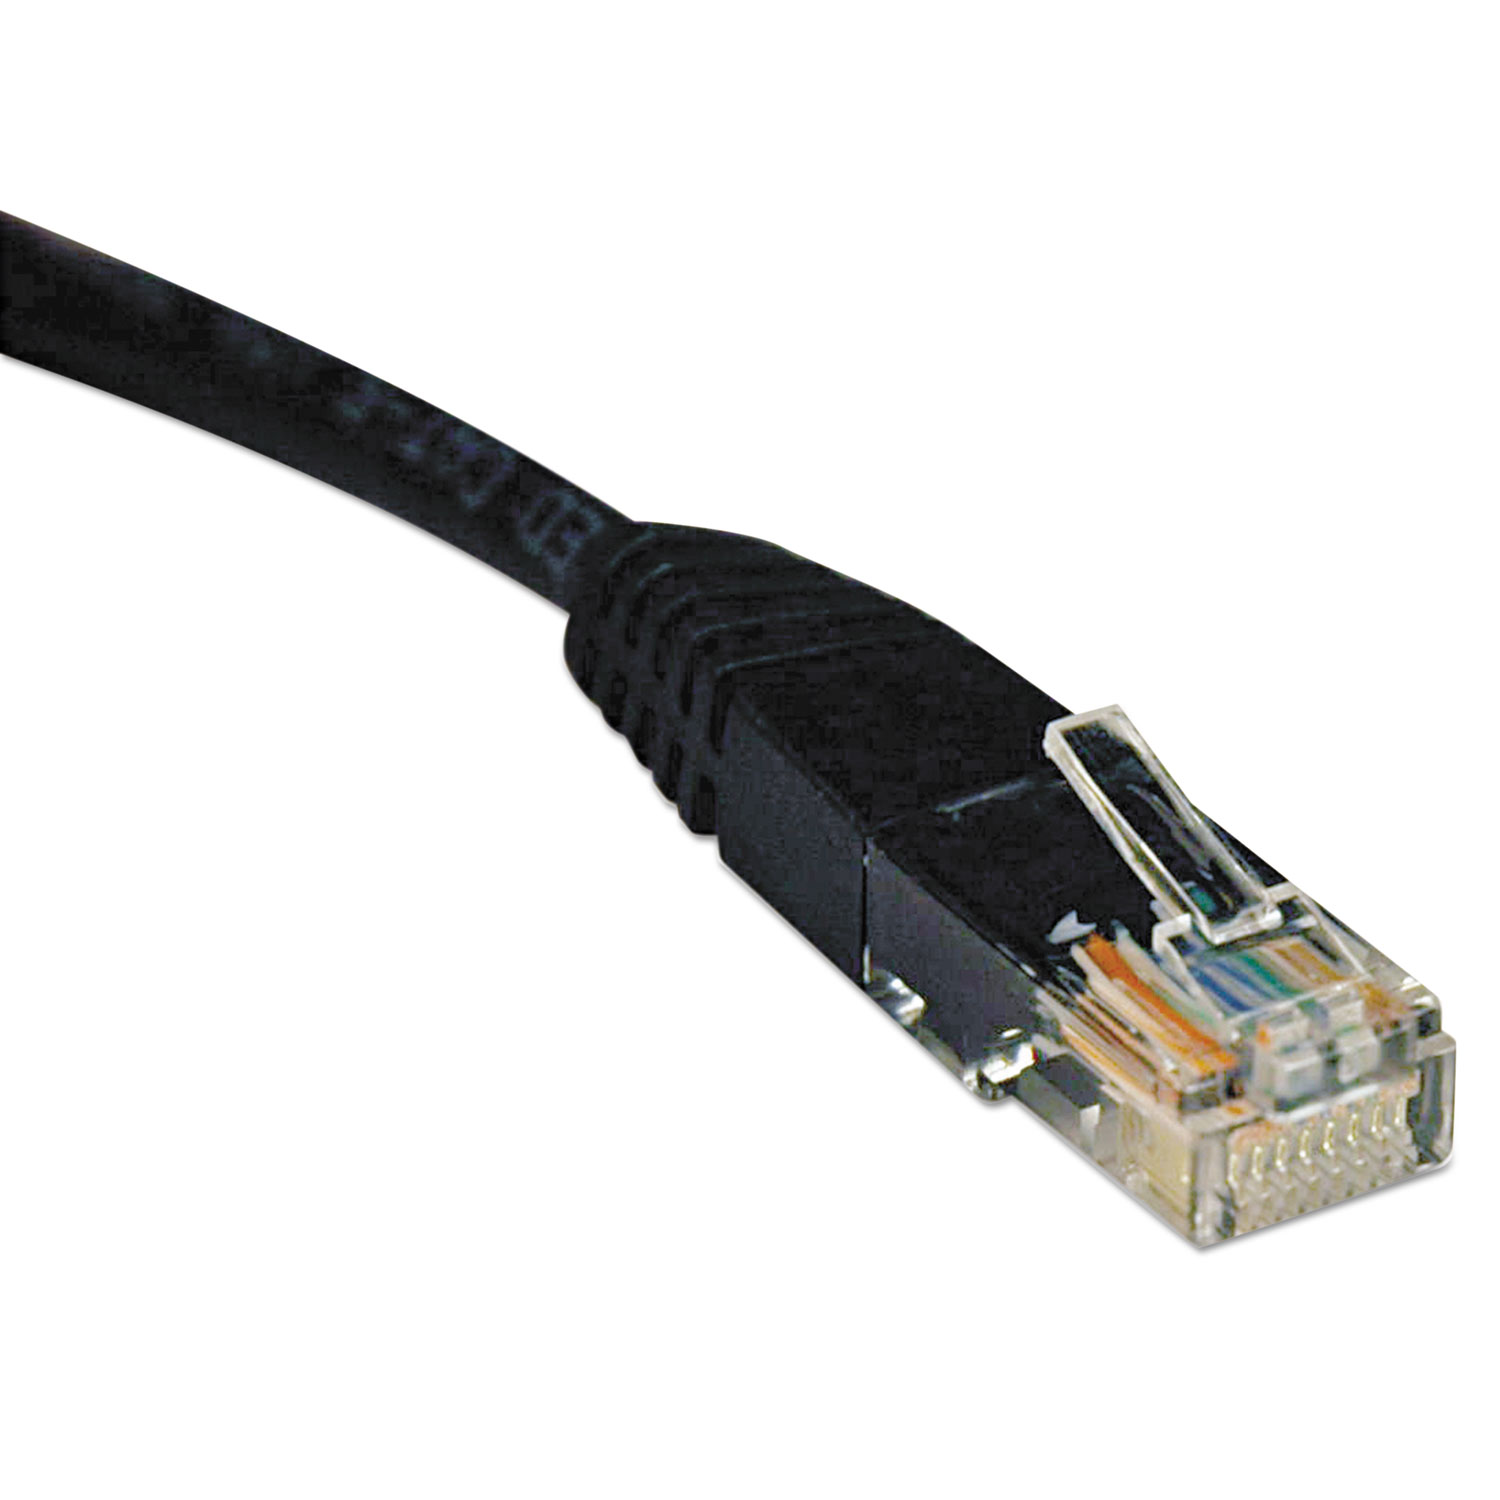  Tripp Lite N002-010-BK Cat5e 350MHz Molded Patch Cable, RJ45 (M/M), 10 ft., Black (TRPN002010BK) 